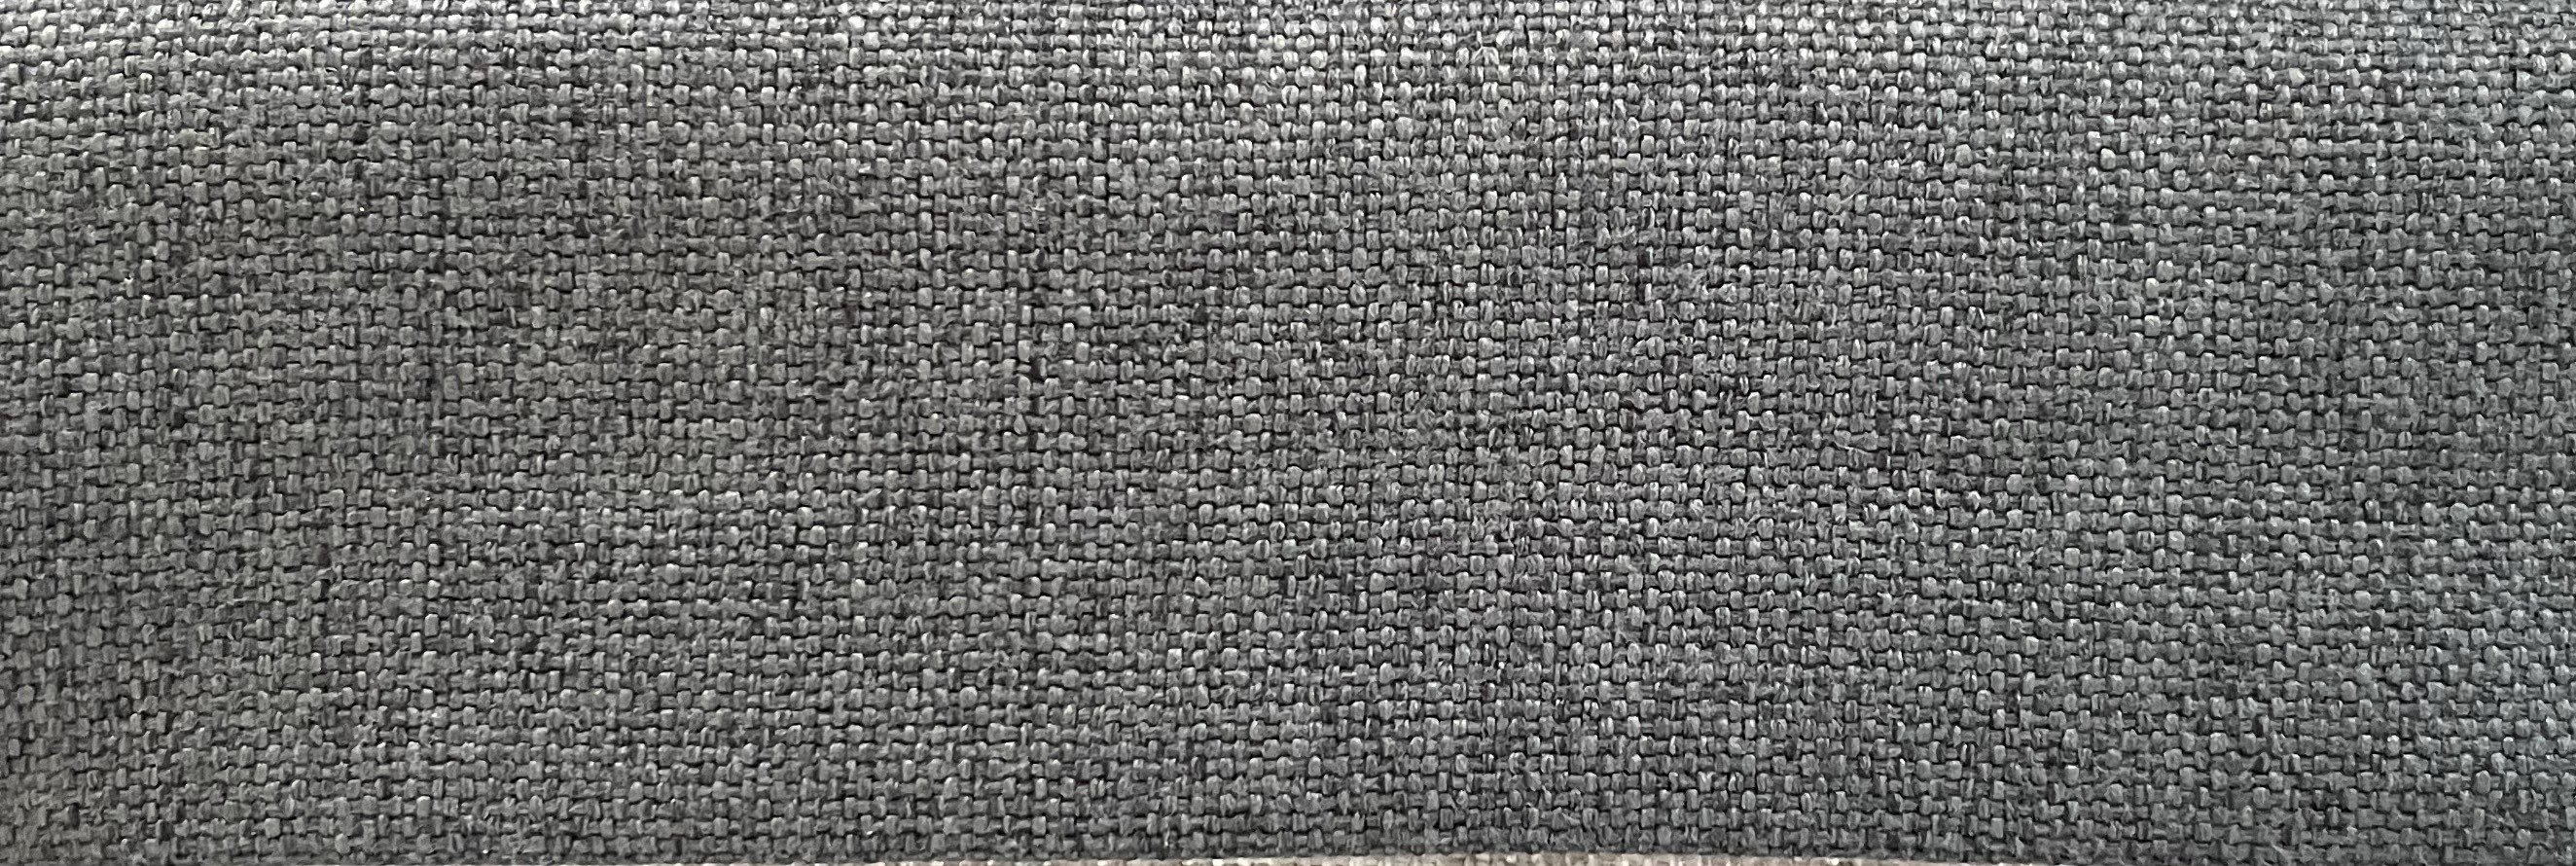 Tissu gris foncé - JD378-15 